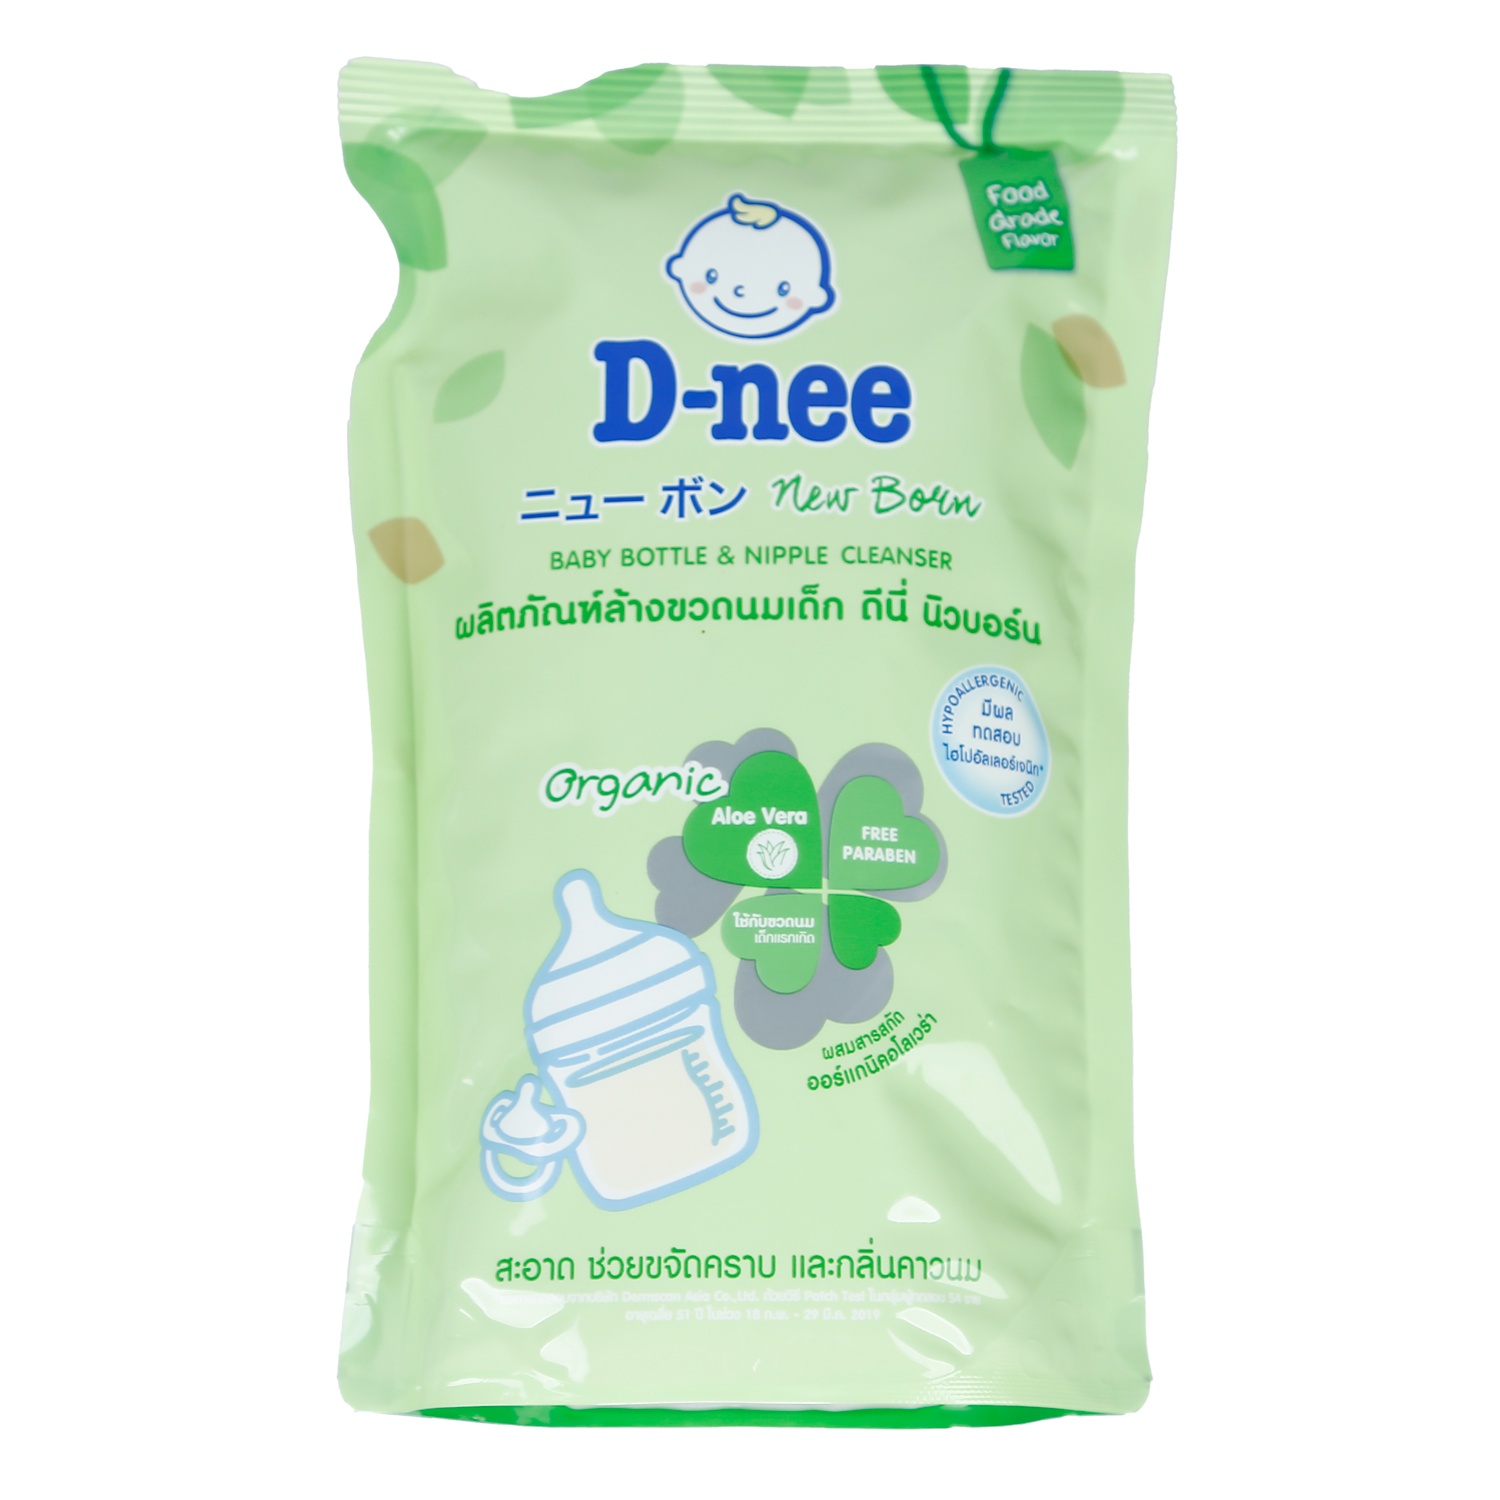 Nước rửa bình/ xúc bình sữa Dnee Thái Lan 600ml/ 620ml mẫu mới- nước xúc bình sữa D-nee chính hãng nhập khẩu - nước rửa chén Dnee xanh lá